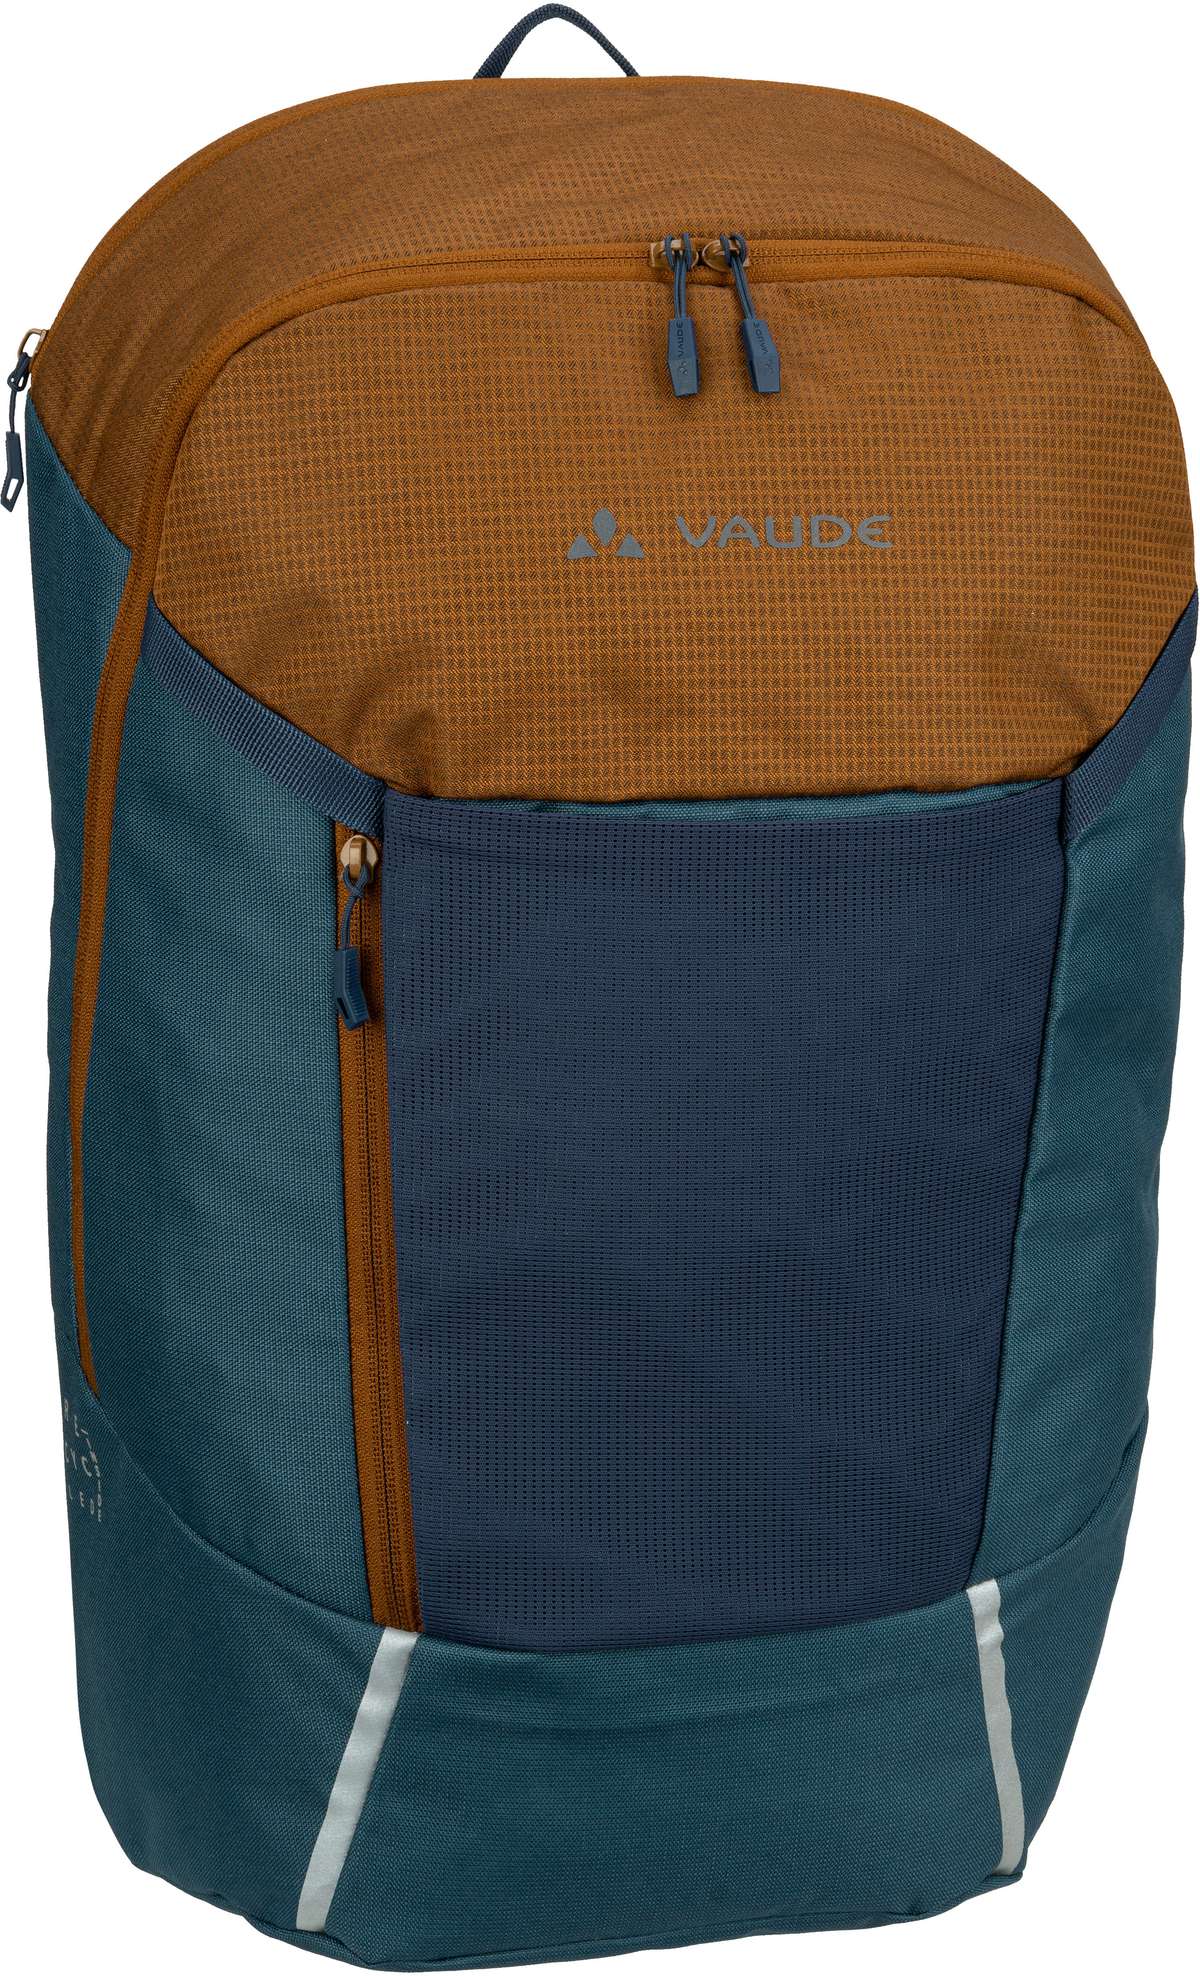 Vaude Cycle 22 Pack  in Blau (22 Liter), Rucksack / Backpack